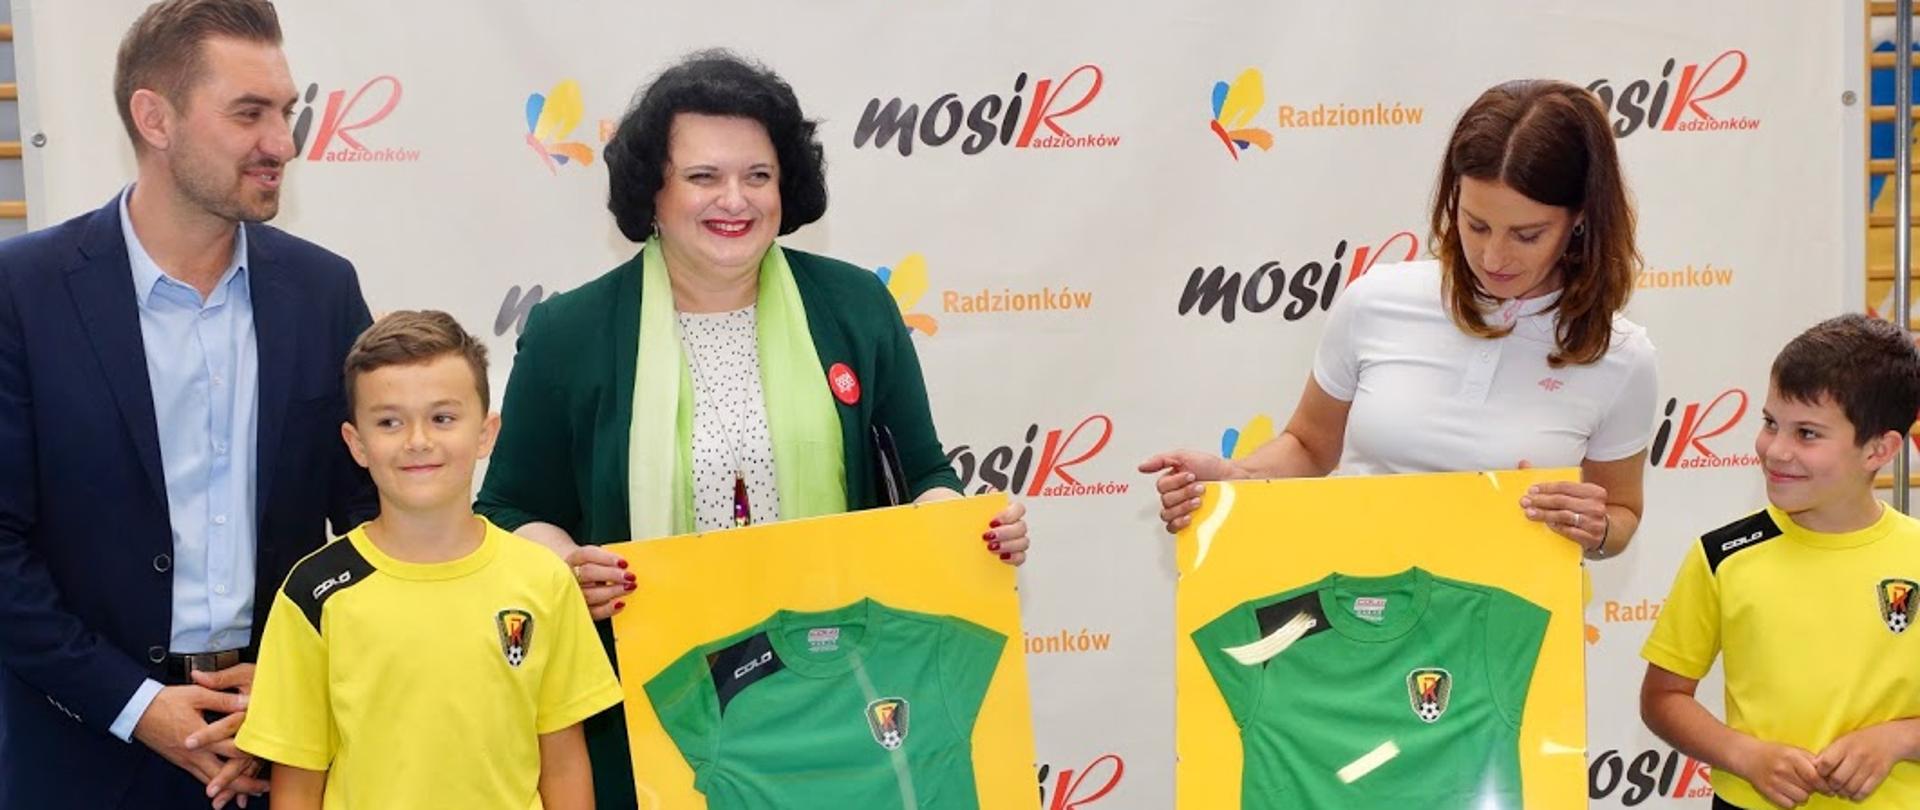 Minister Danuta Dmowska-Andrzejuk trzyma koszulkę klubu na grupowym zdjęciu.